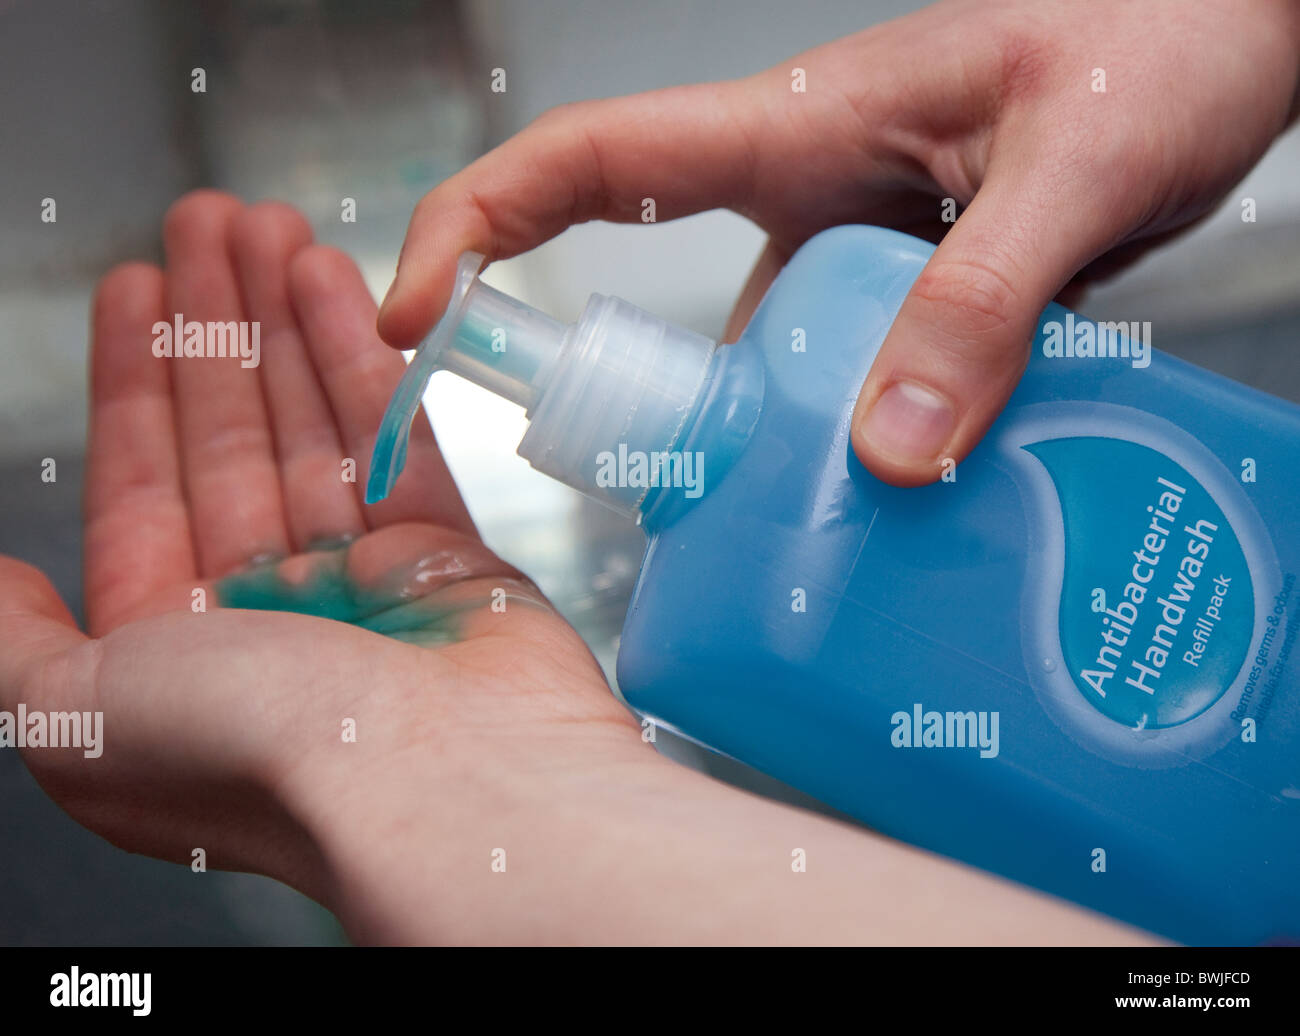 Waschen die Hände mit Antibakterielle Handwäsche. London Stockfoto